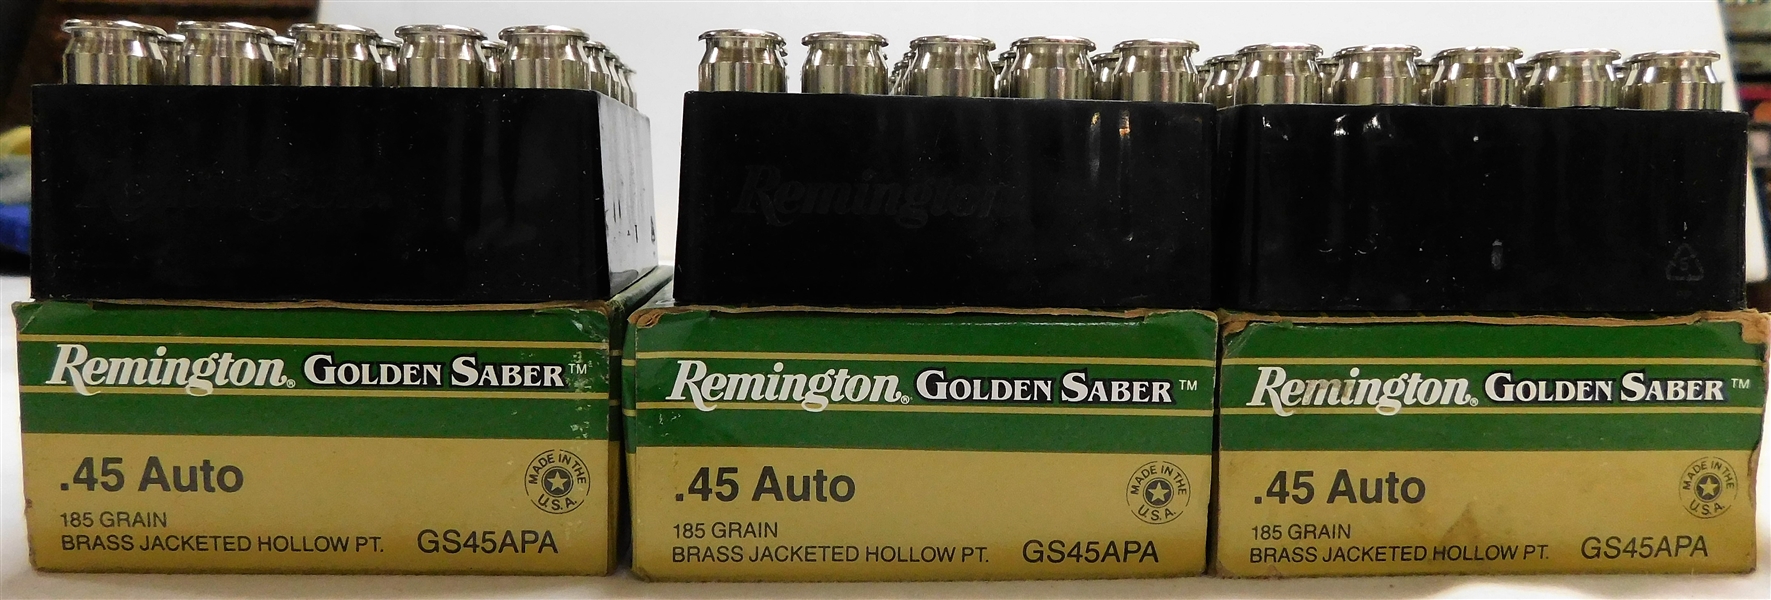 3 Boxes of .45 Auto Remington Golden Saber Bullets